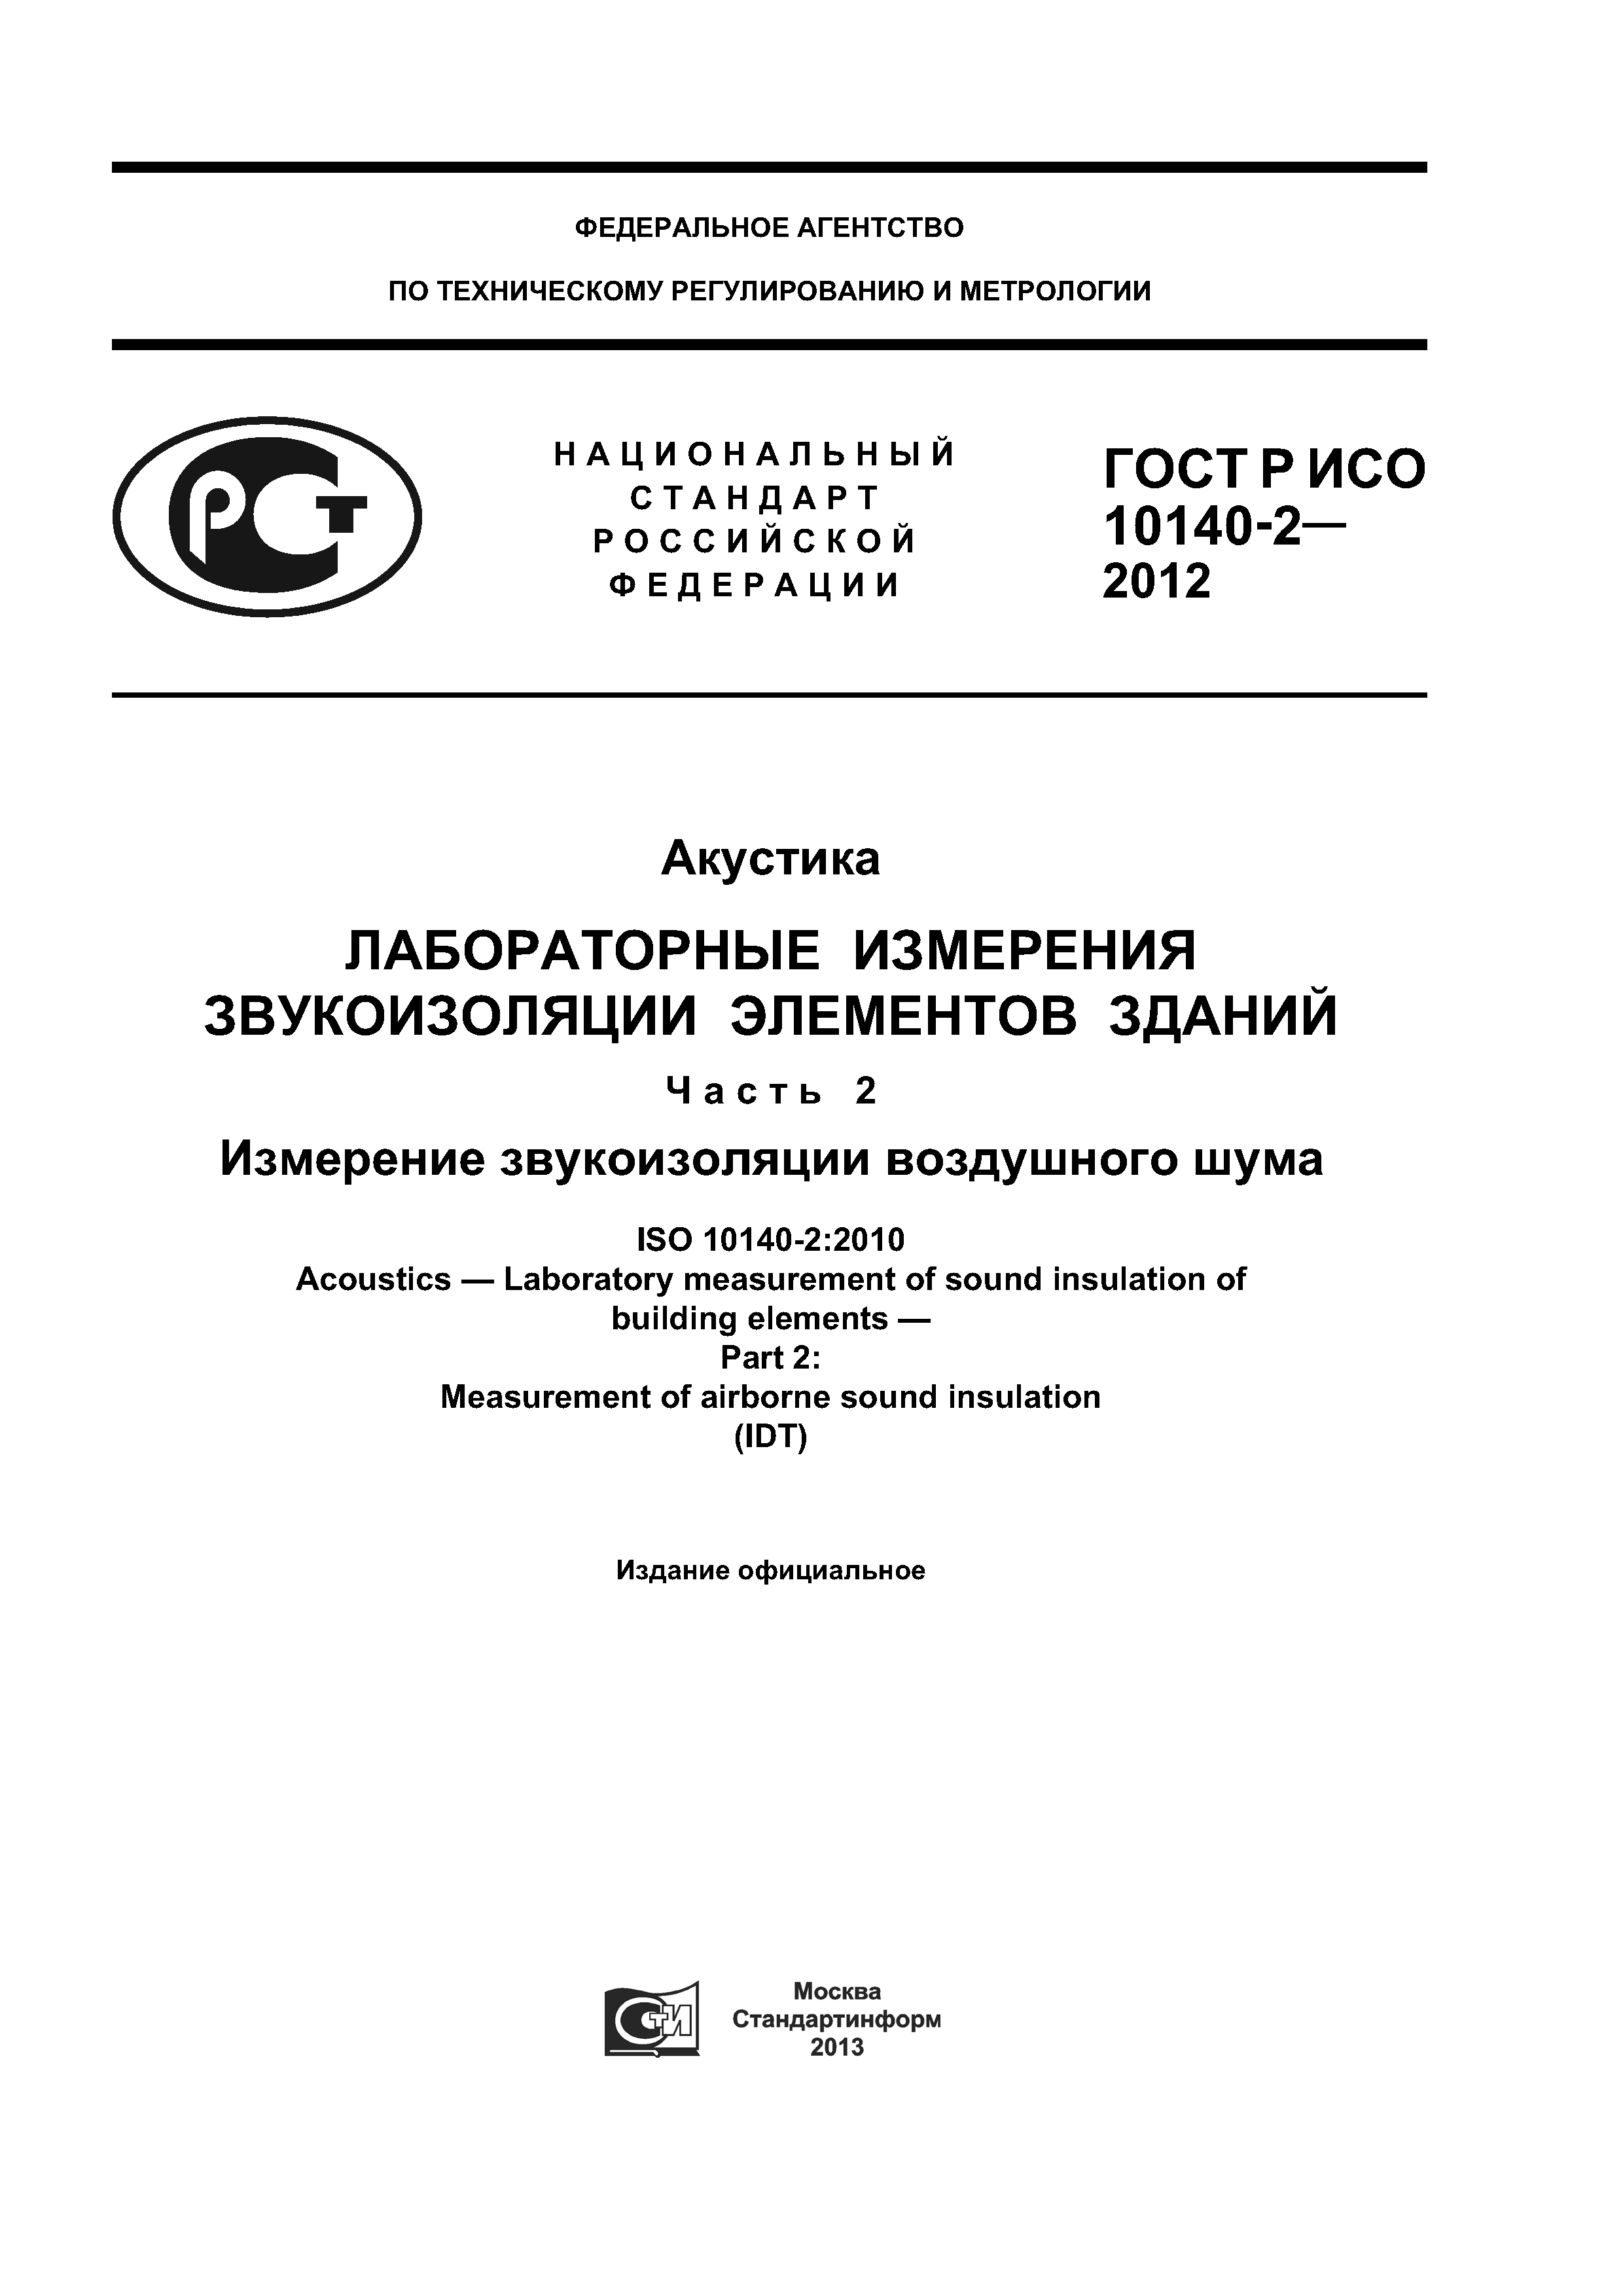 ГОСТ Р ИСО 10140-2-2012